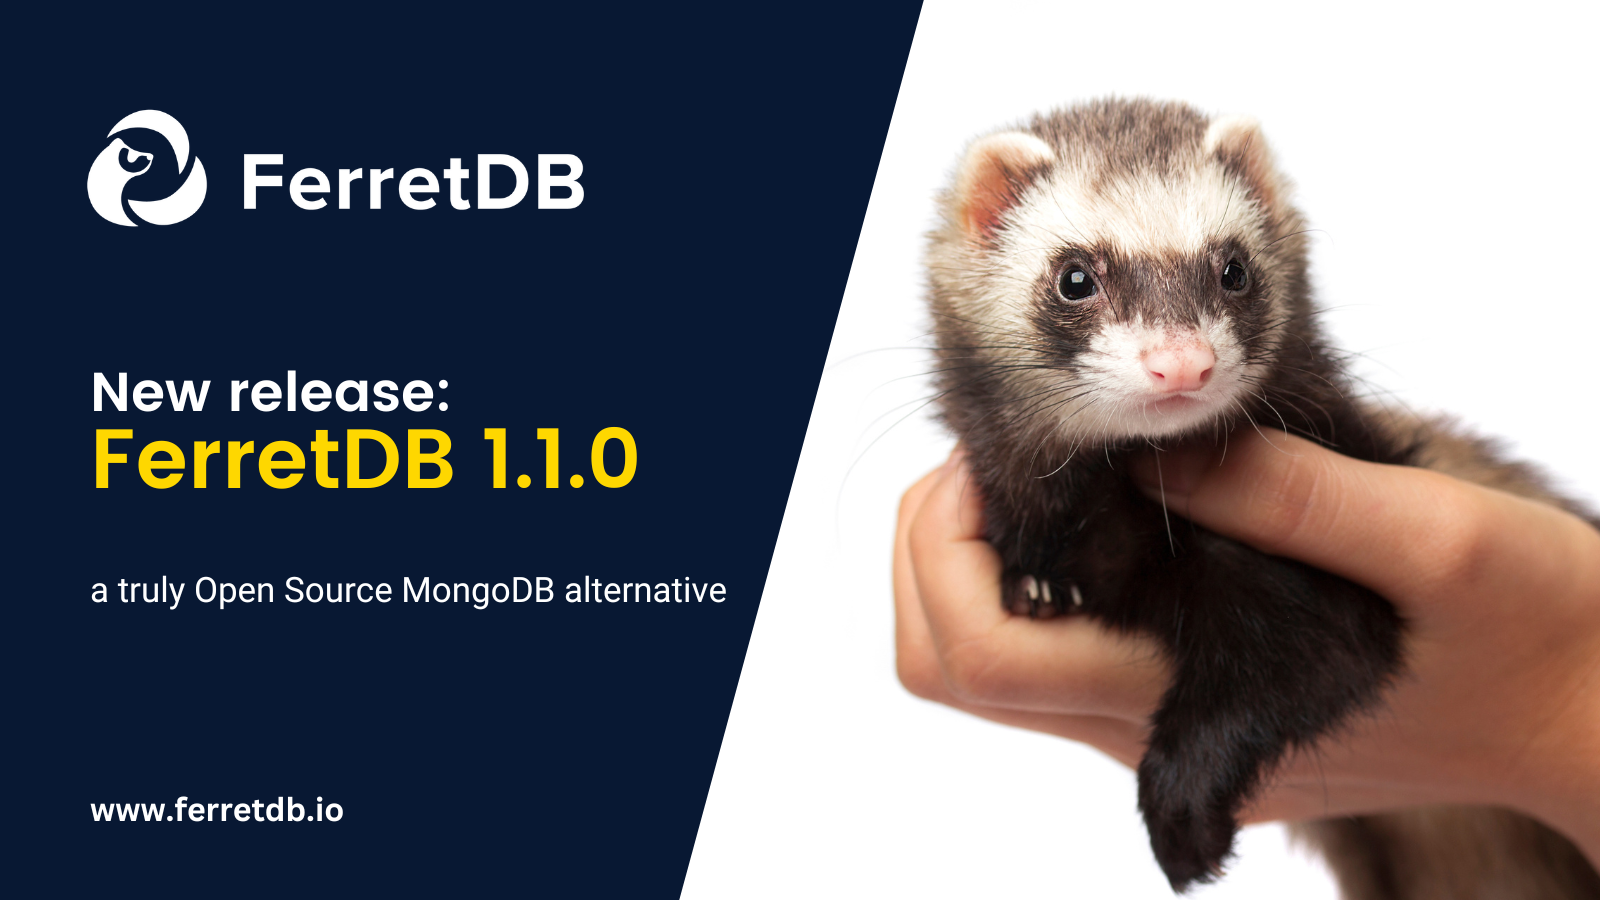 FerretDB v.1.1.0